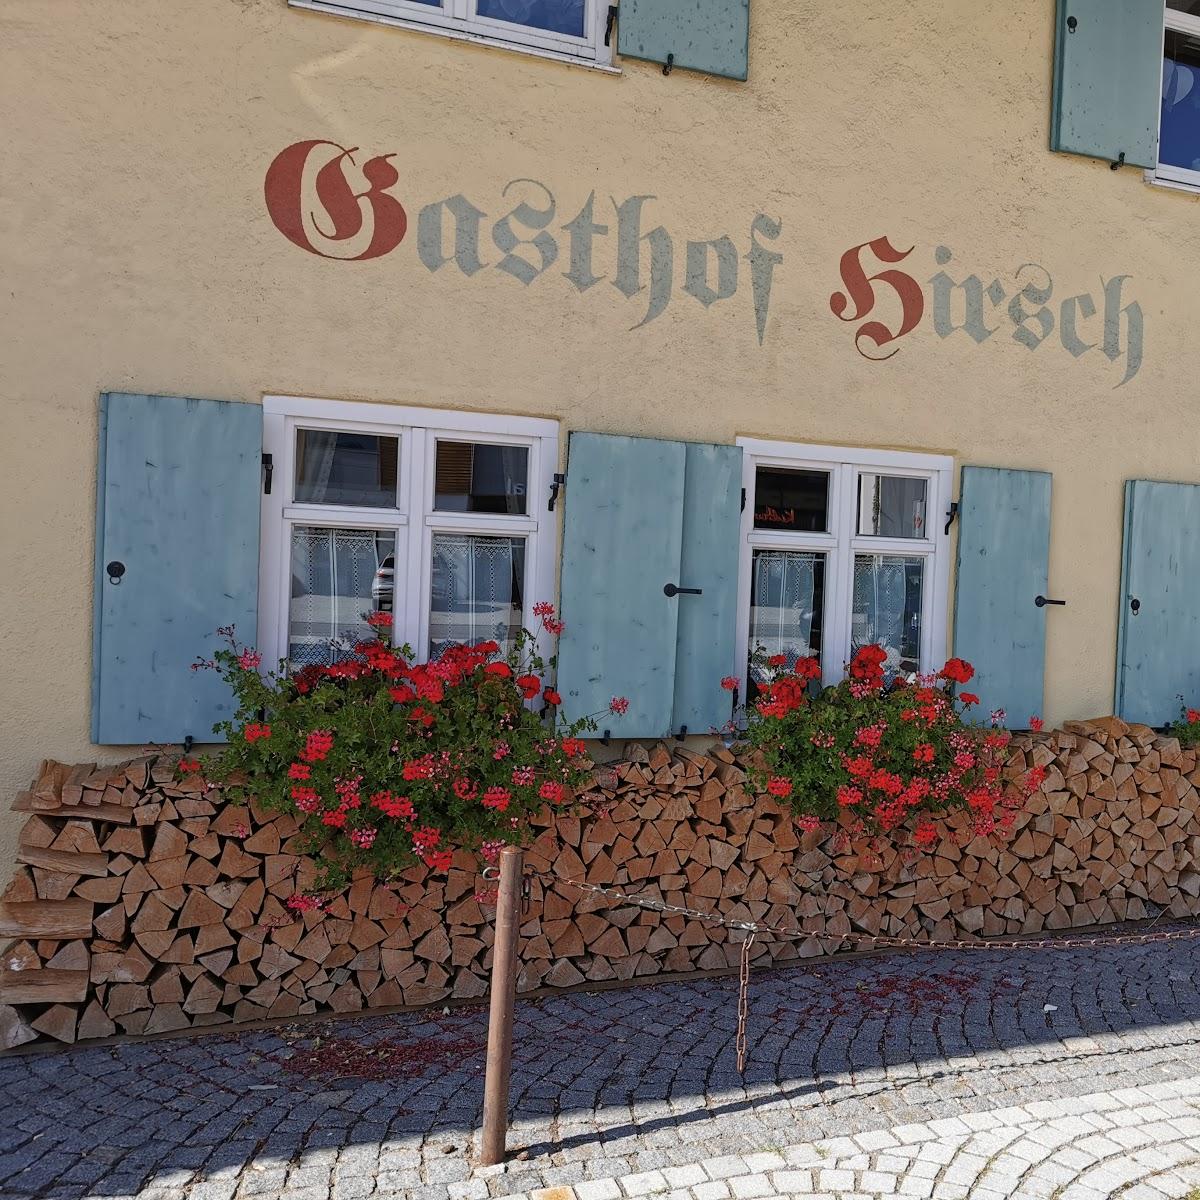 Restaurant "Landgasthof Hirsch" in  Wildpoldsried